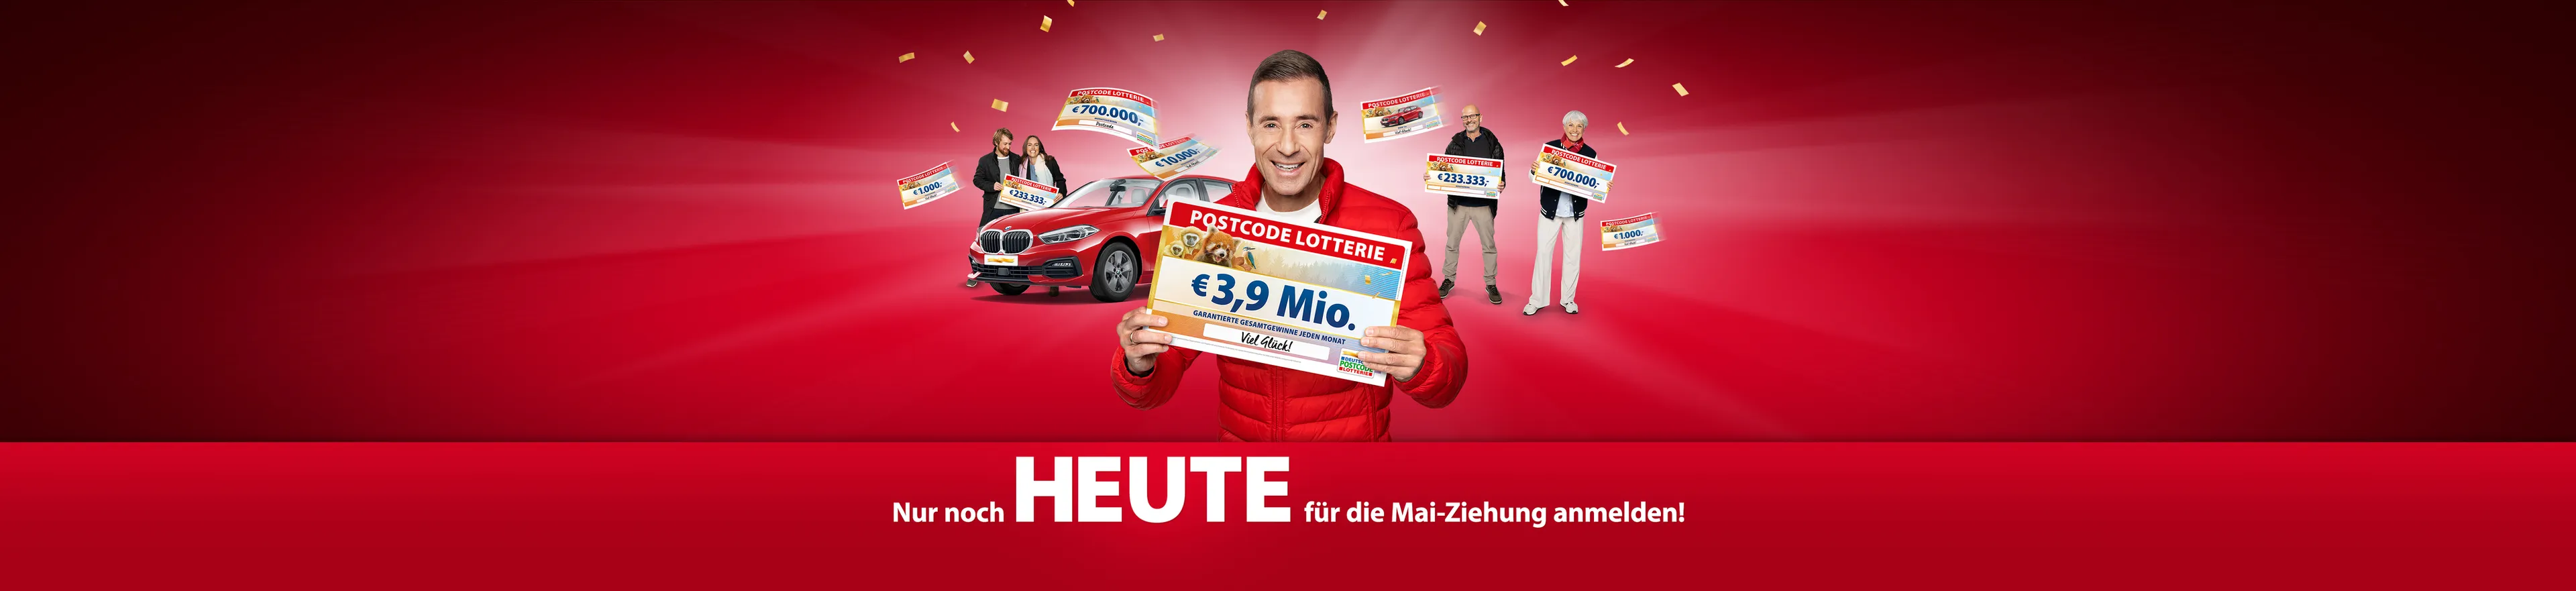 Kai Pflaume zeigt einen Scheck der Deutschen Postcode Lotterie